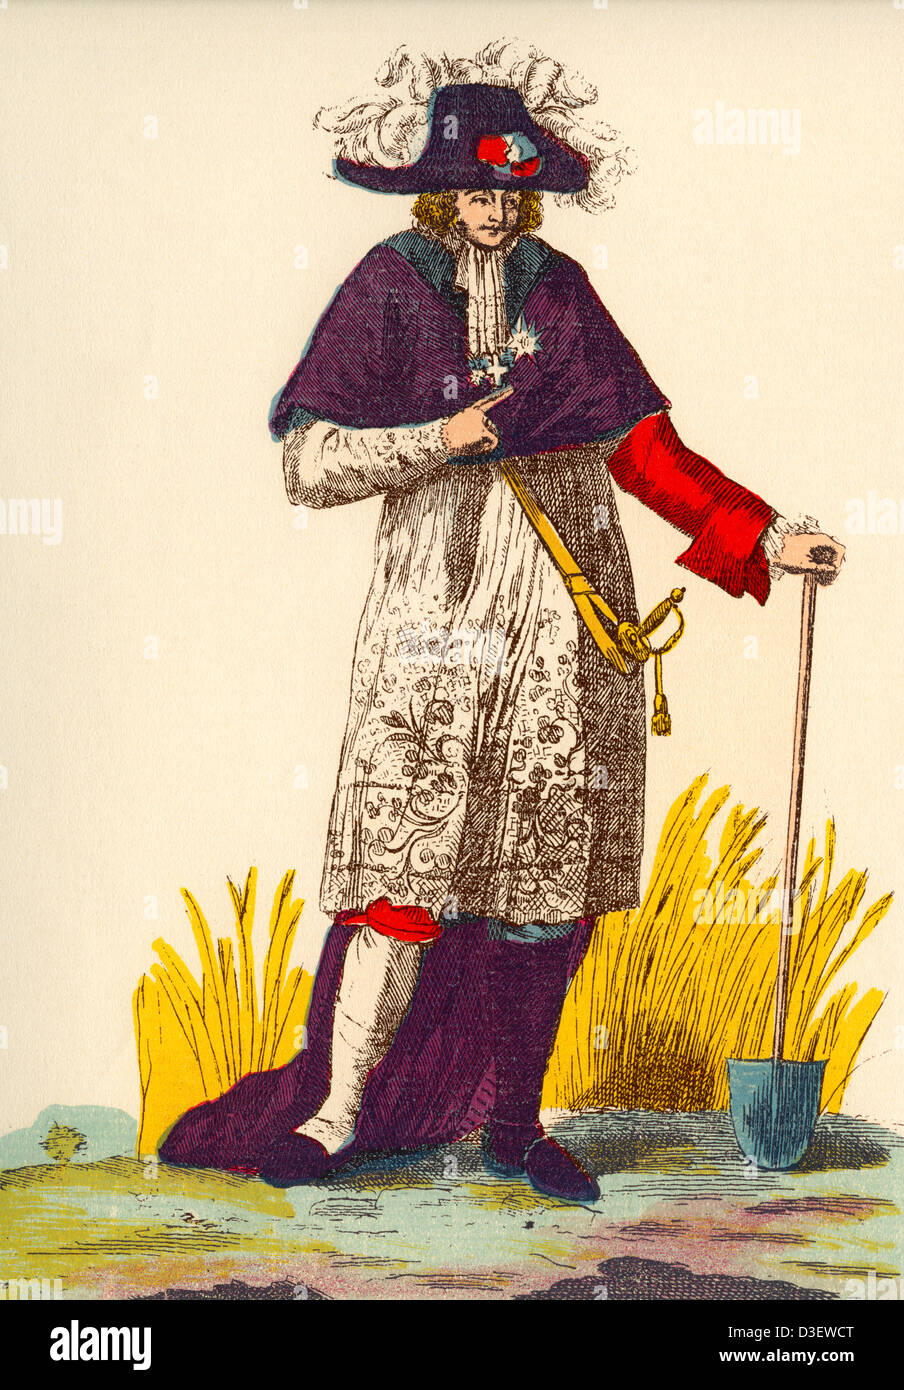 Mann trägt Mischung aus Kleidung, die drei Aufträge - Klerus, Adel und Worker - in Frankreich während der französischen Revolution darstellt. Stockfoto